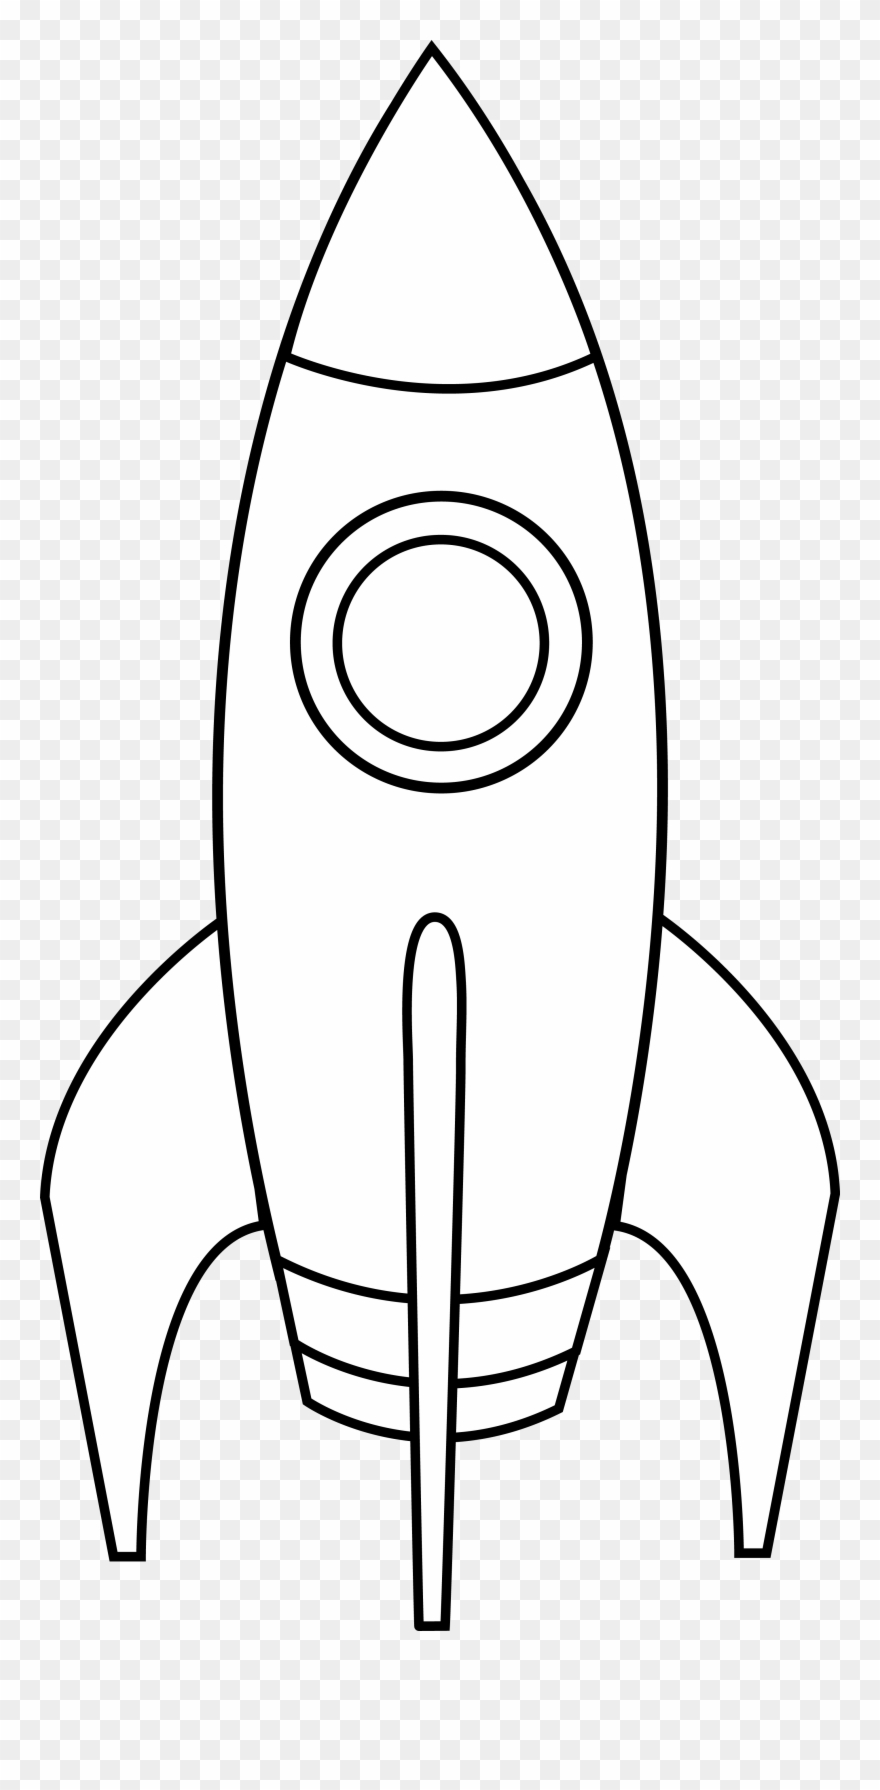 drawing spaceship